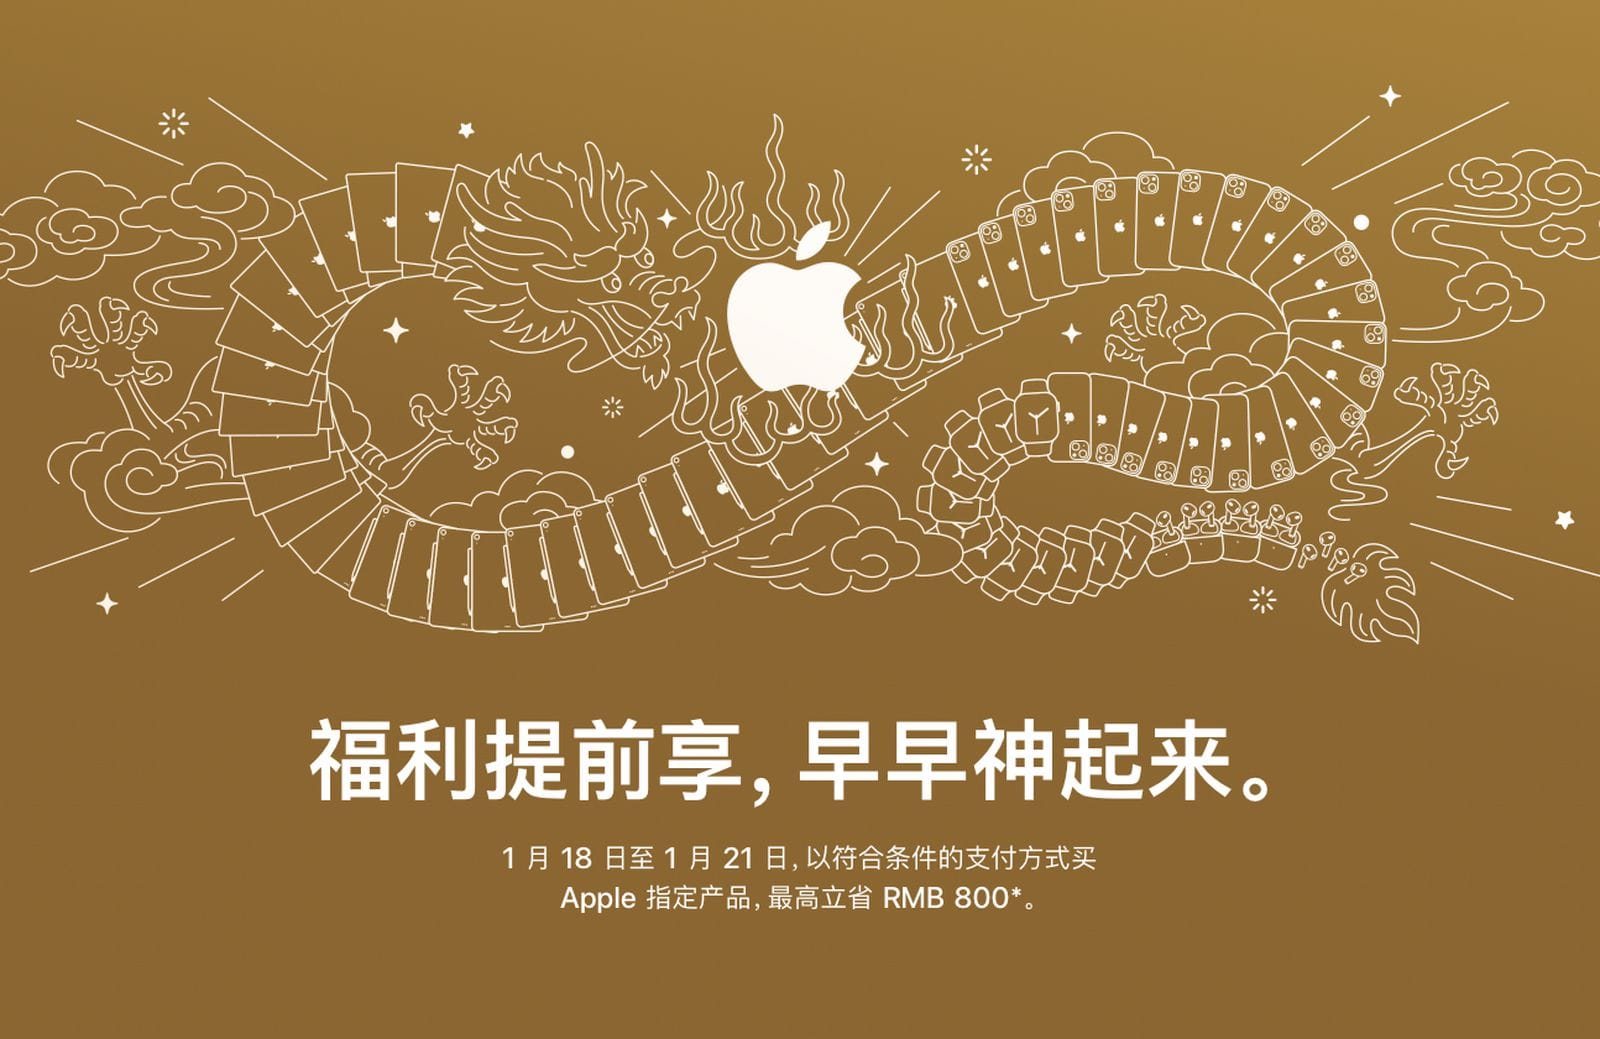 Apple предлагает уникальные скидки на iPhone в Китае, чтобы справиться с падением продаж